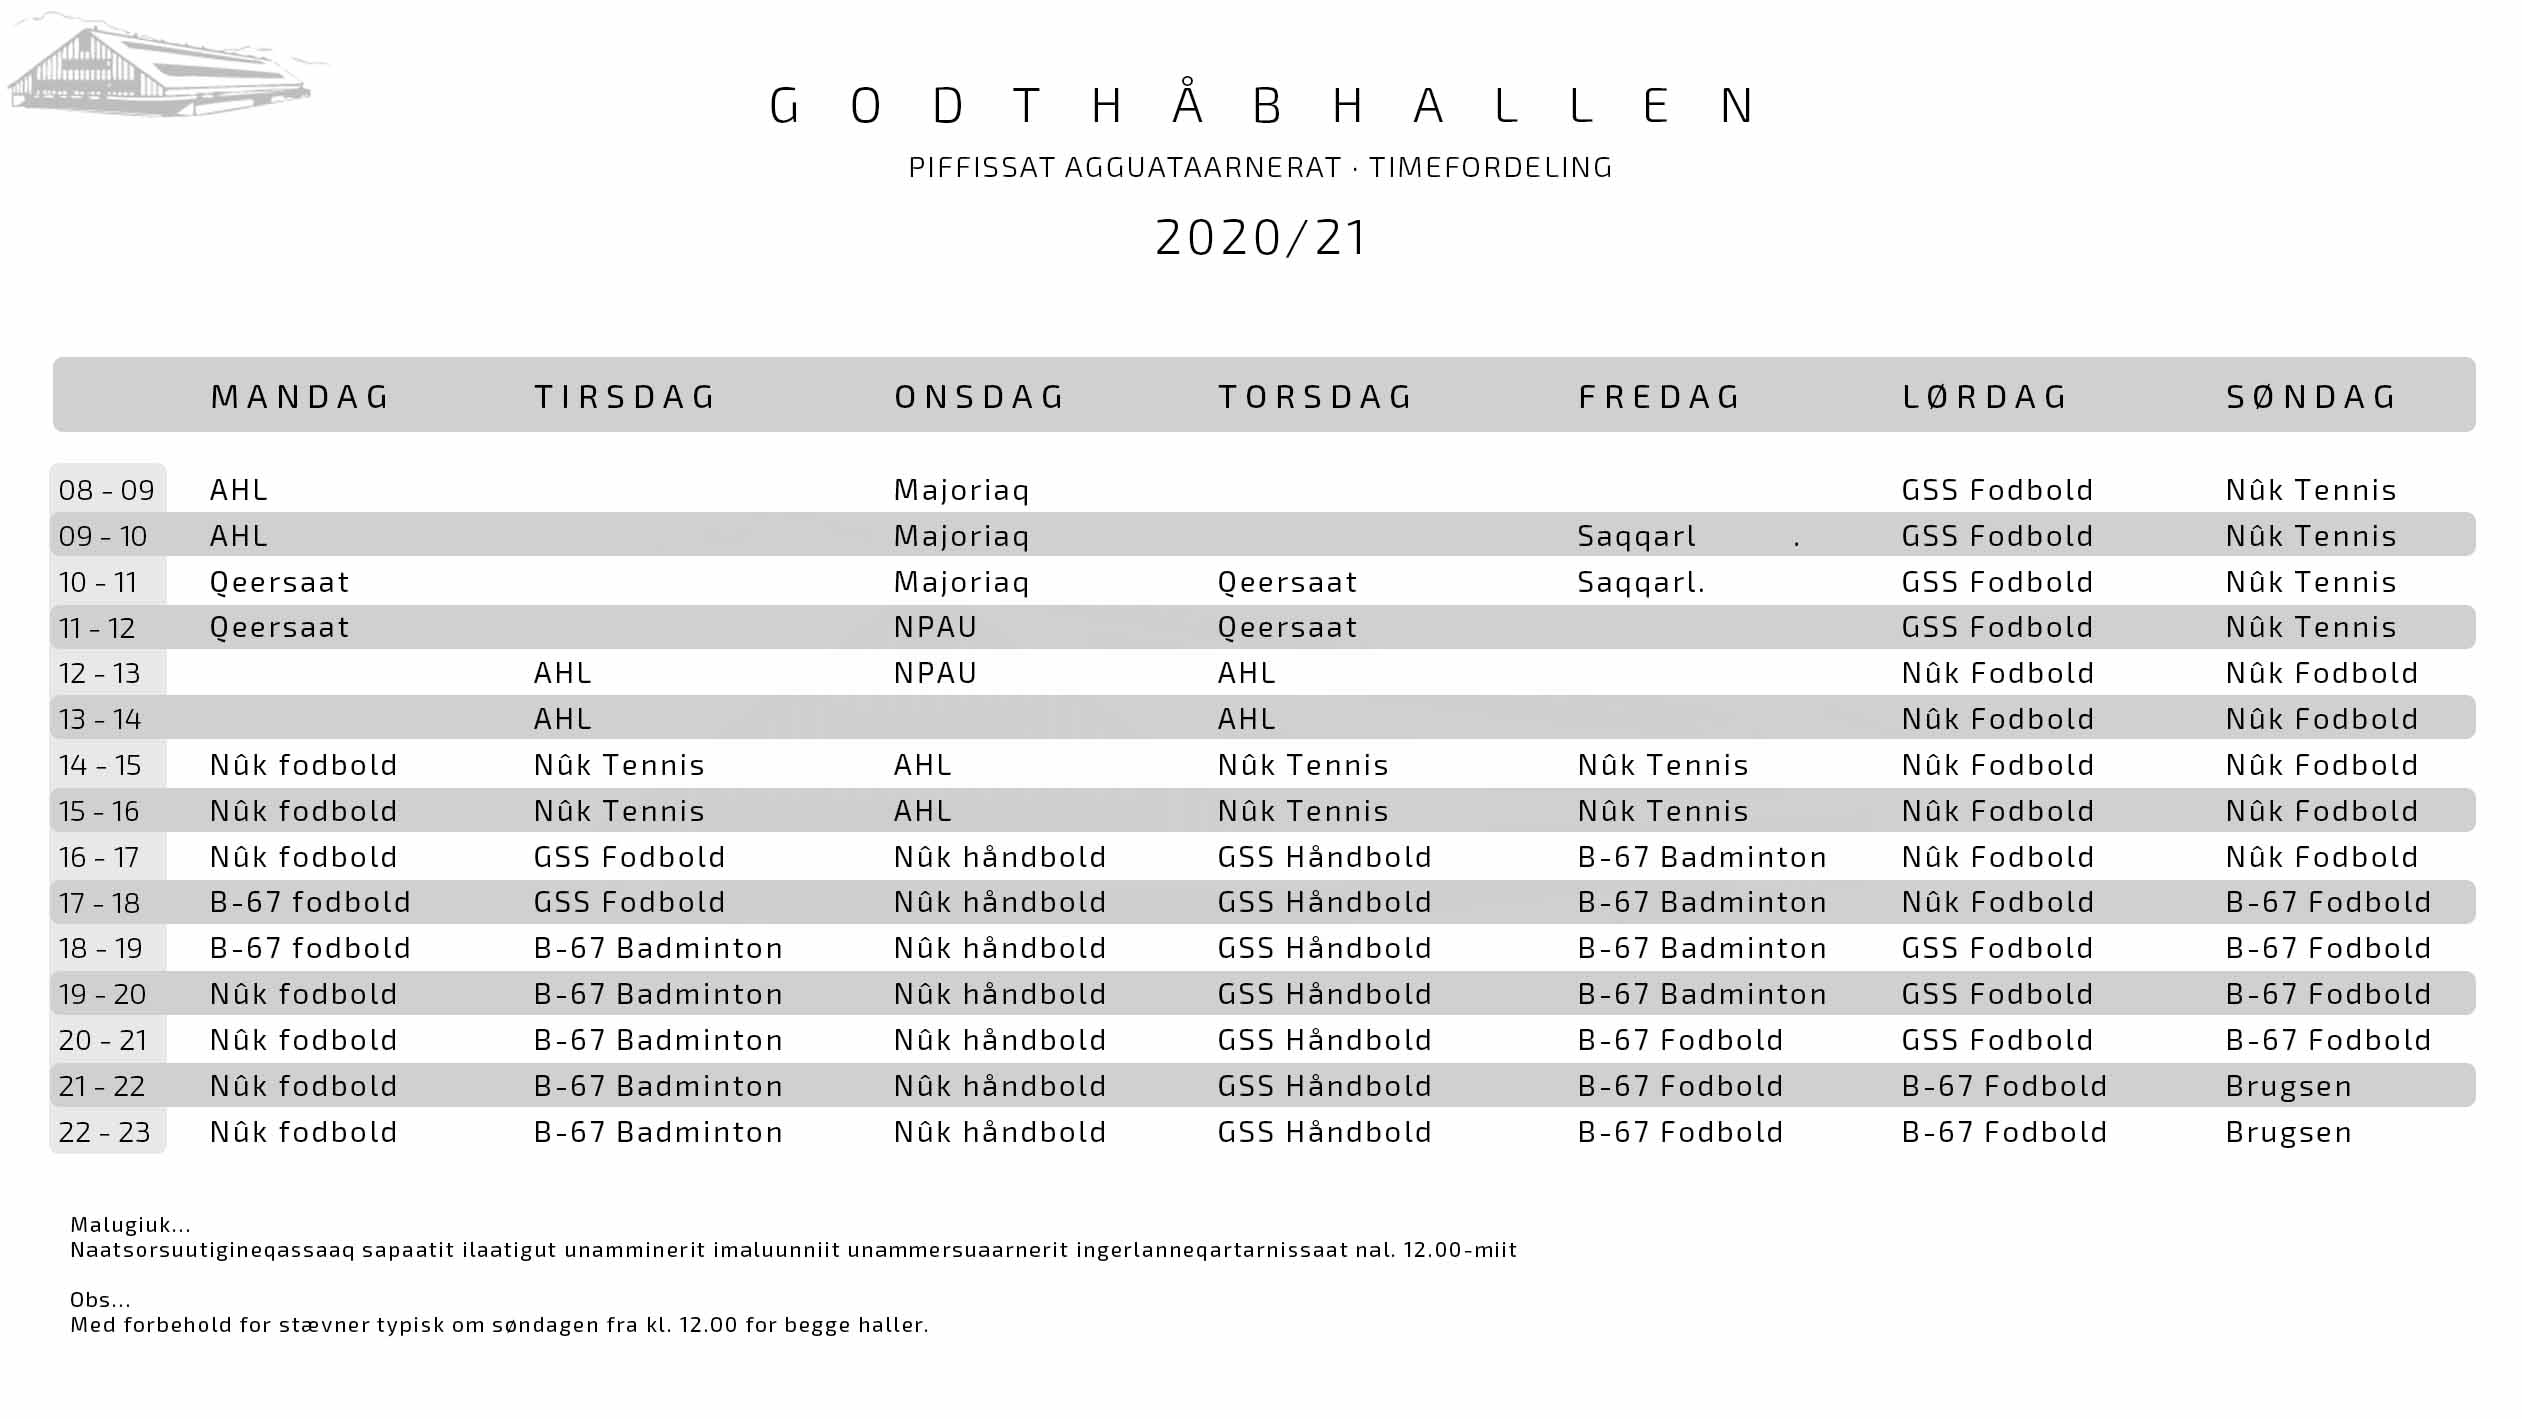 GHB-hallen-timefordeling_2020